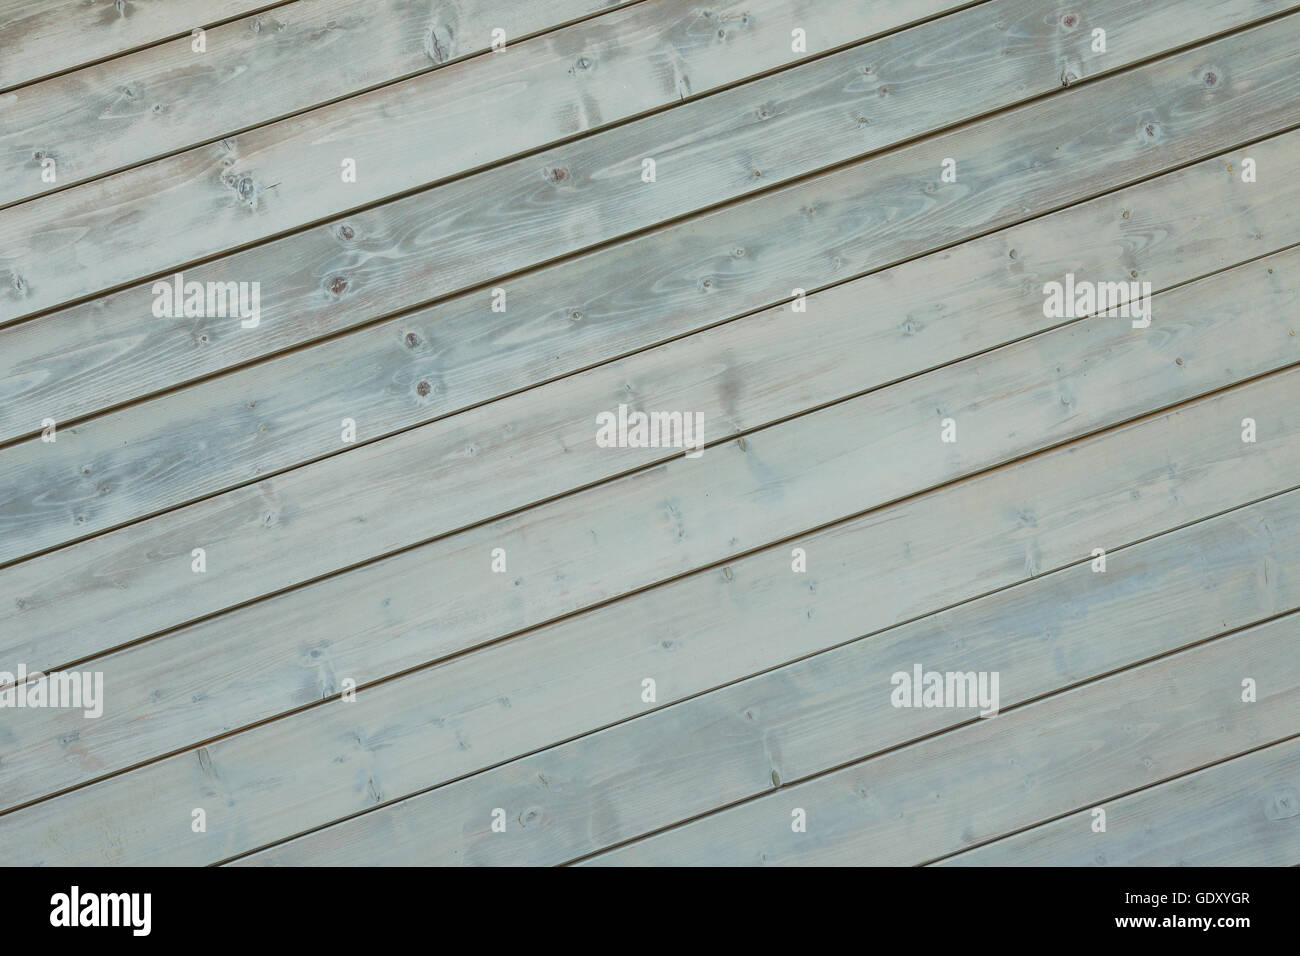 Hölzerne Planken Hintergrund. blau-graue Farbe rustikal Holz Wand Textur Stockfoto